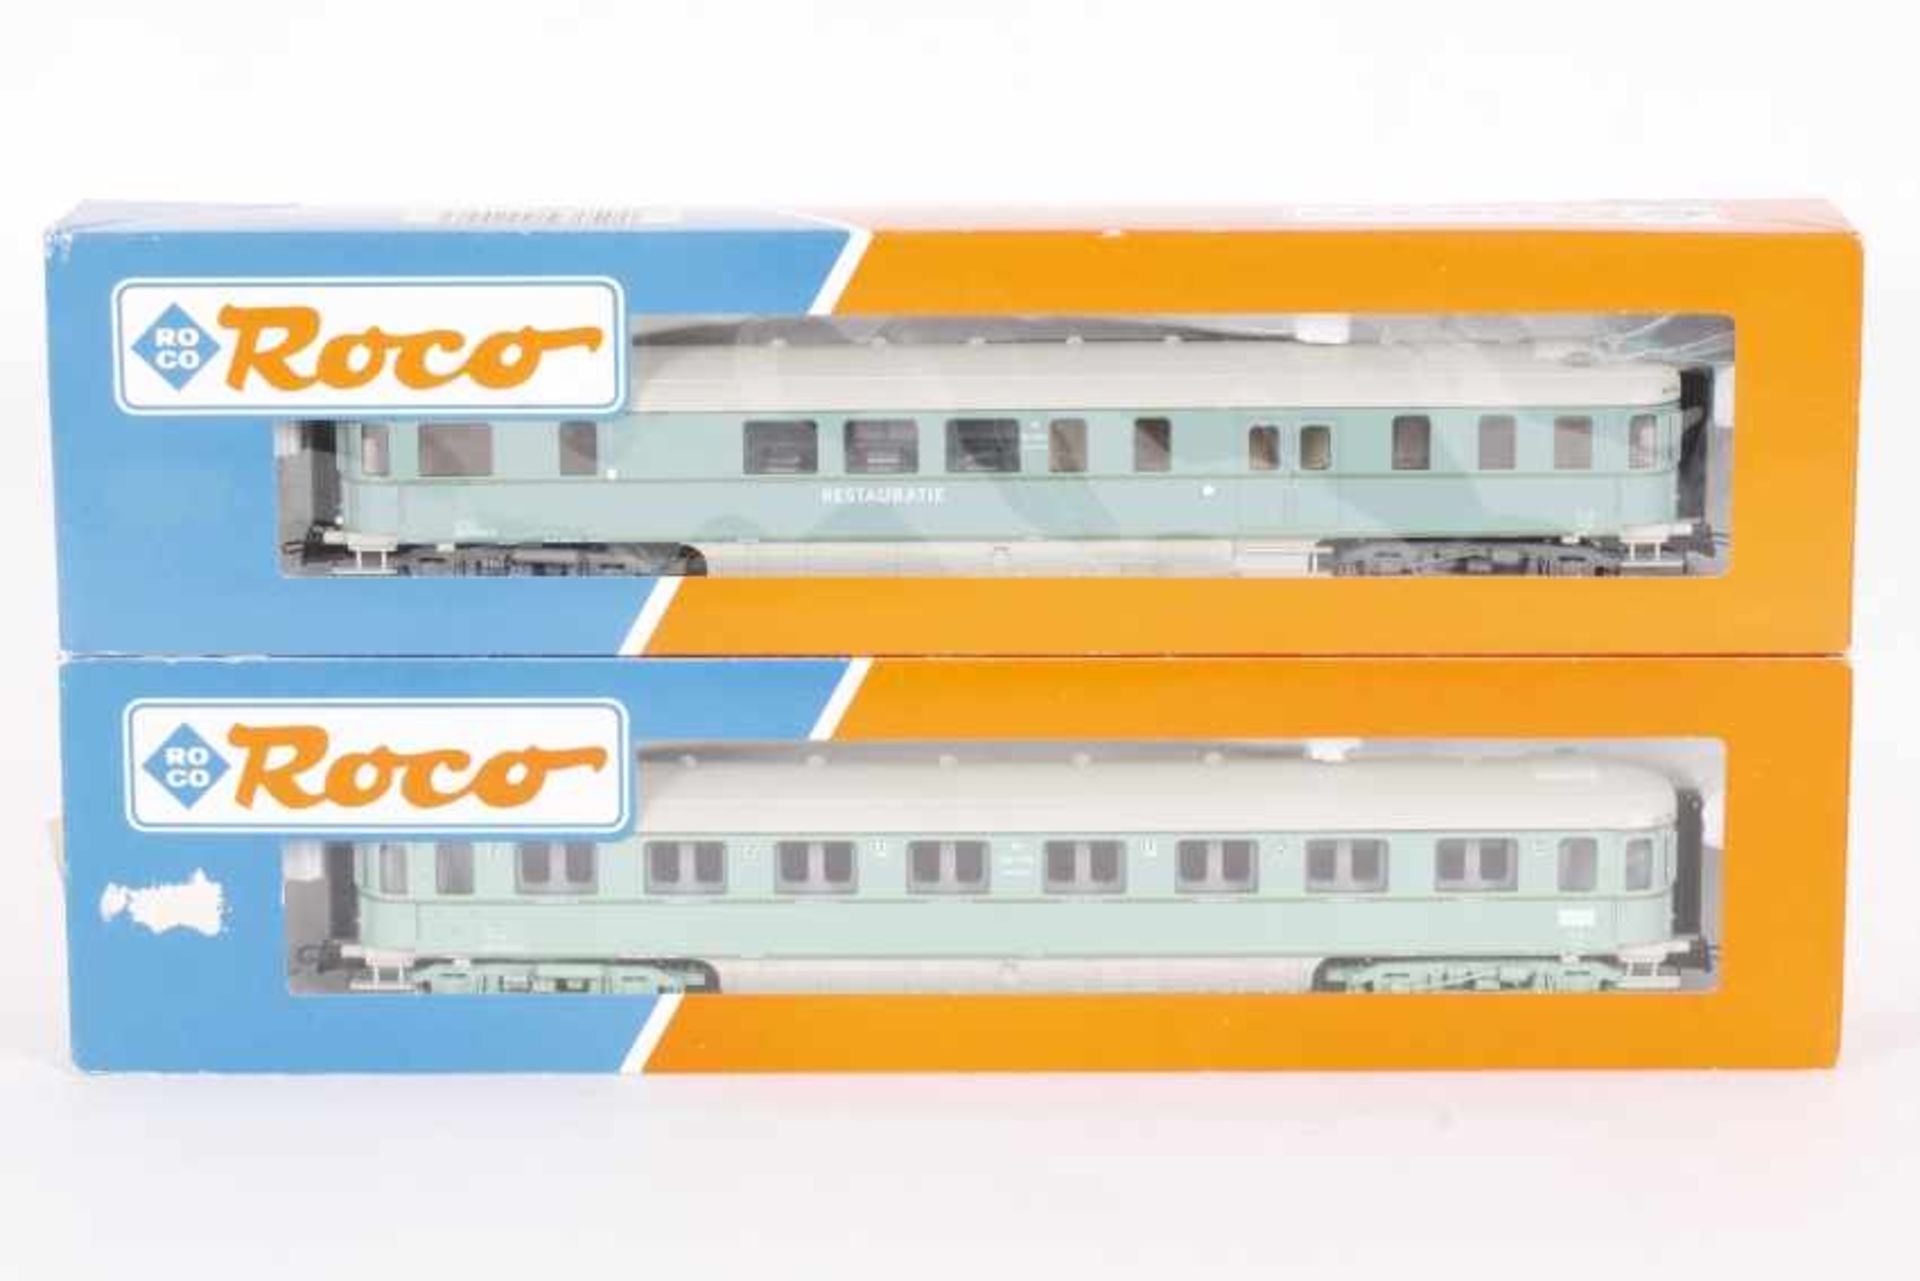 Roco zwei PersonenwagenRoco zwei Personenwagen, 44290, 44283, sehr guter Zustand, Kartons mit